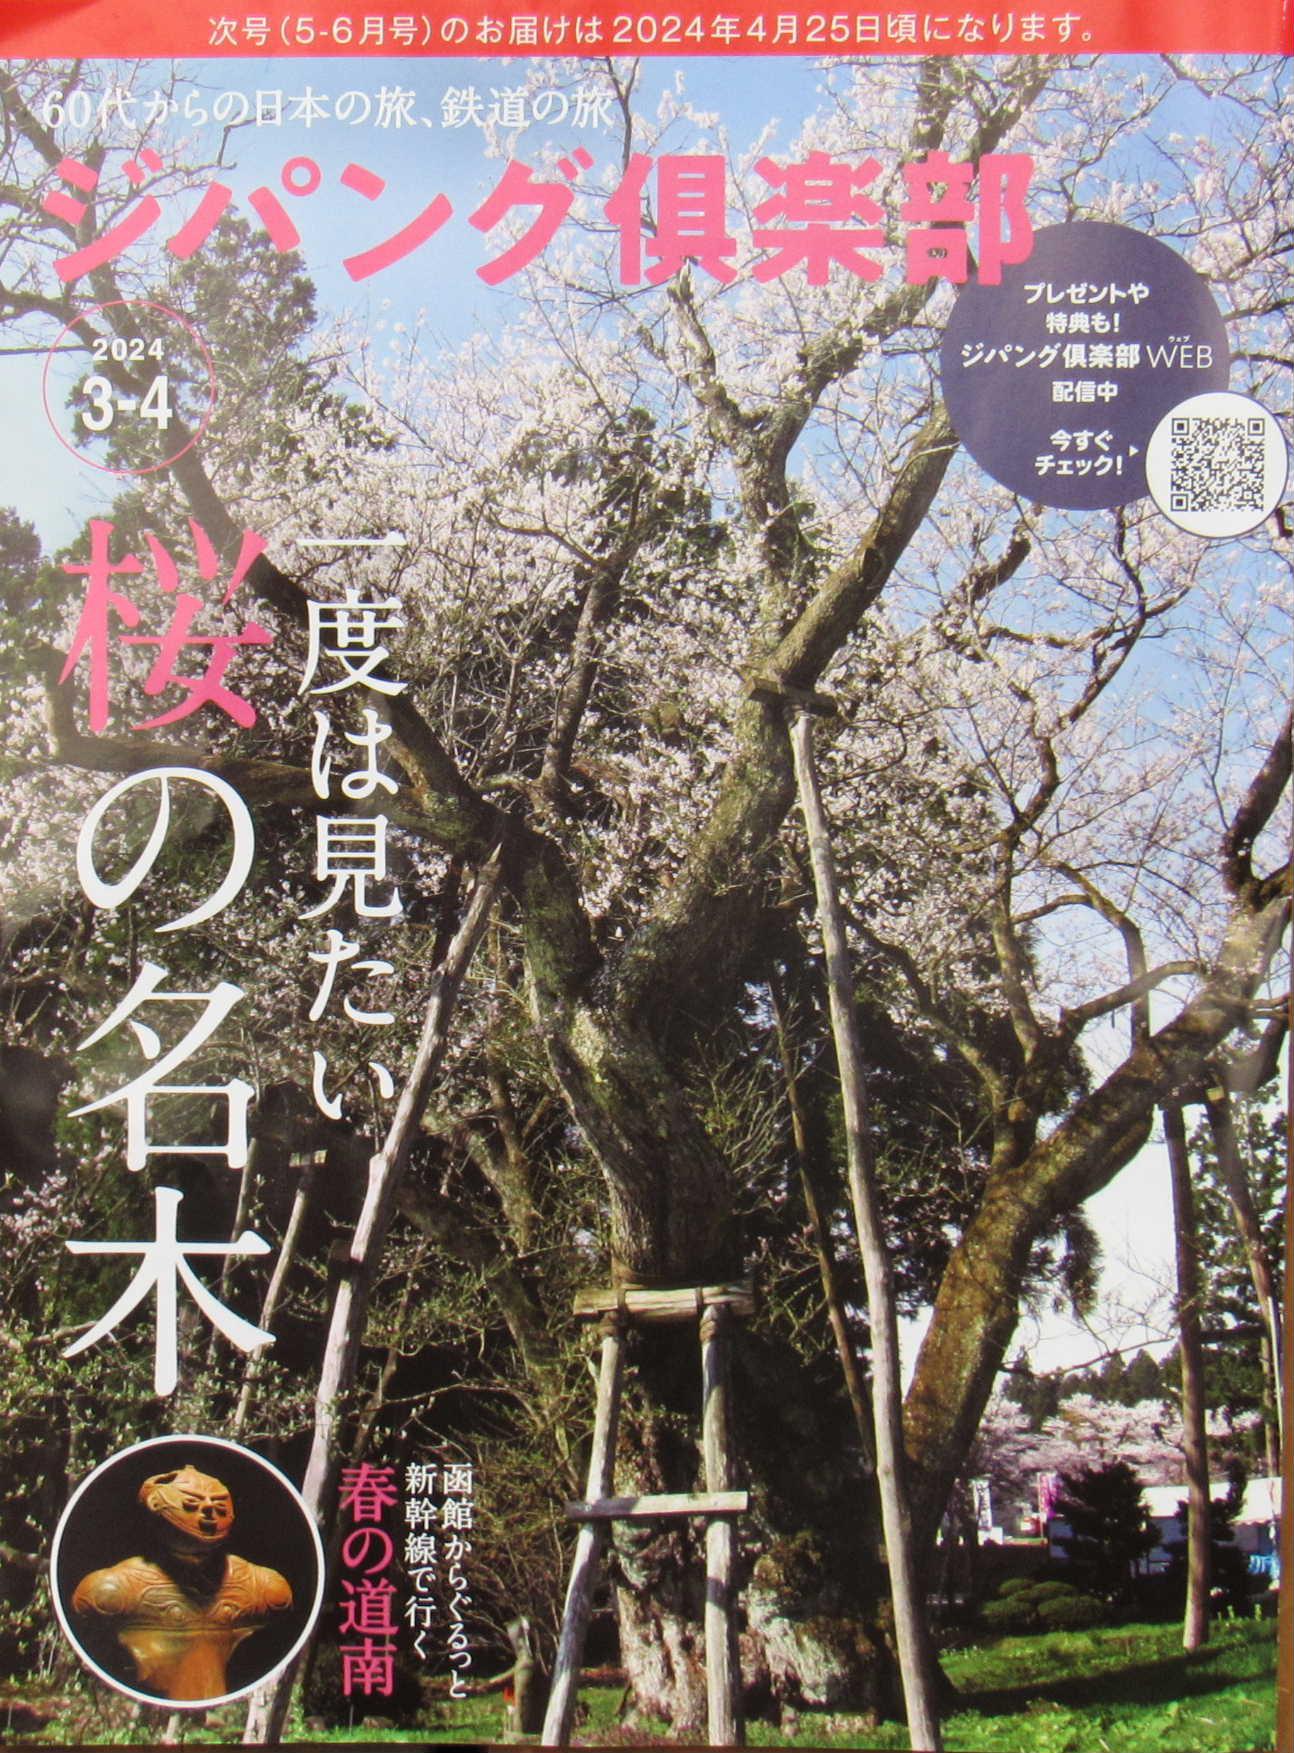 JR東日本の「ジパング倶楽部」という宣伝誌に、見開きで烏帽子山公園の大鳥居と桜が一面に掲載されていました　大人の休日倶楽部の会報と一緒に送付されたこの冊子をみて驚きアップしました　今年は例年より早く開花するのではないかと造園業者が言っていましたがもしかすると3月中に開花するのでしょうか　開花が待ち遠しくなりました